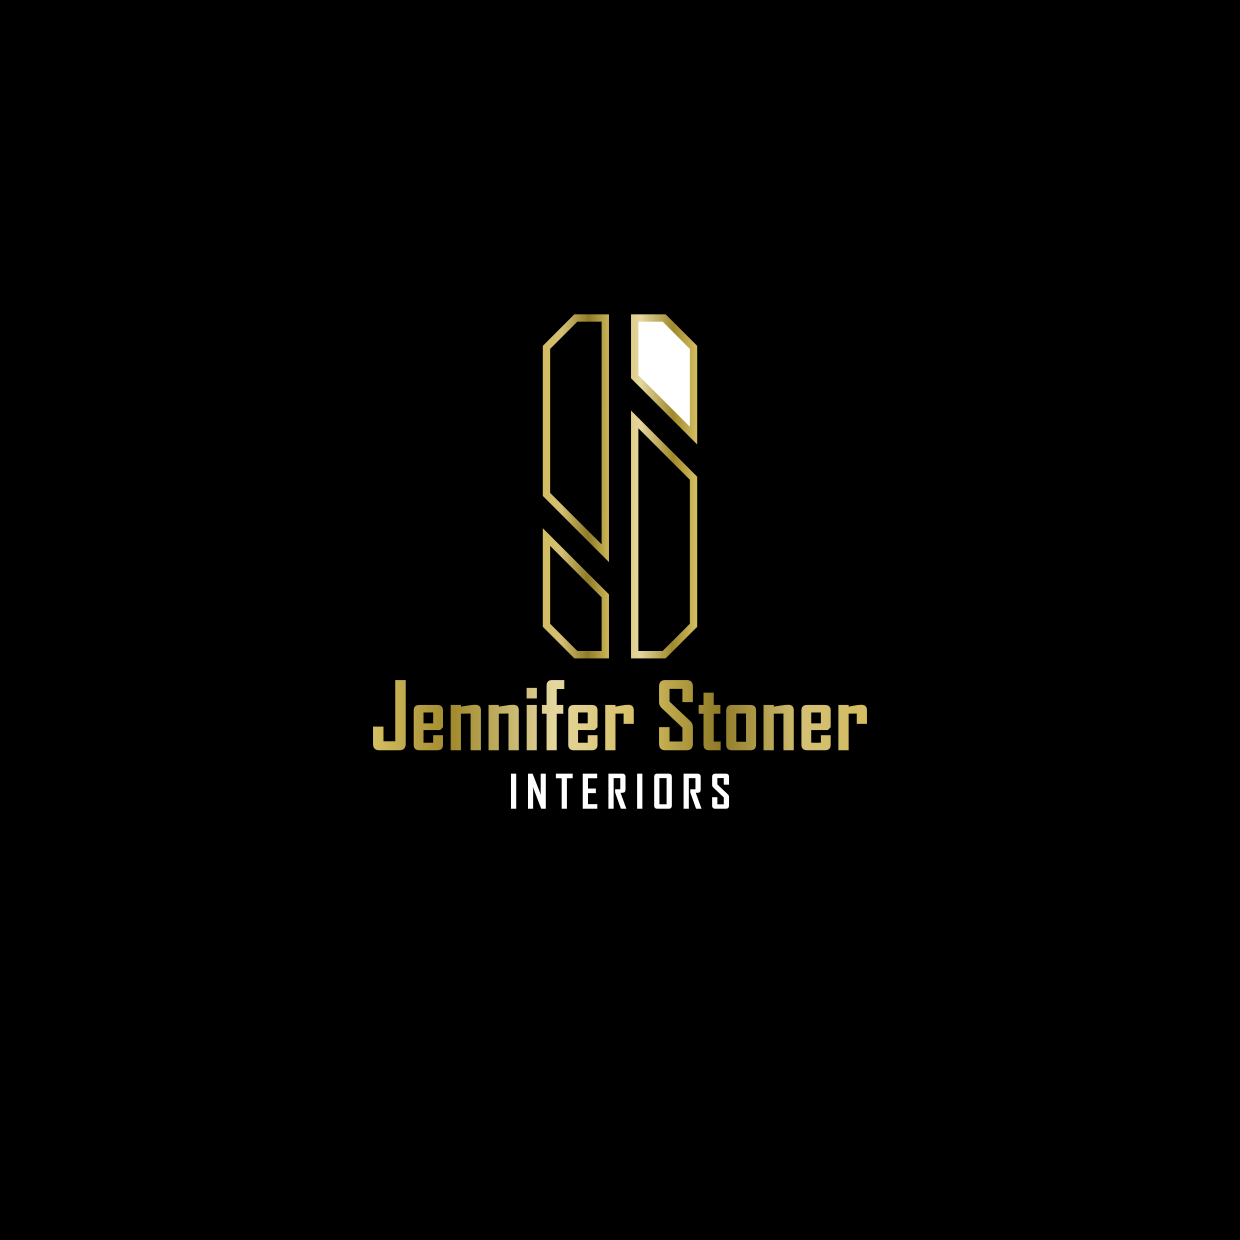 Stoner Logo - Elegant, Playful, Business Logo Design for Jennifer Stoner Interiors ...